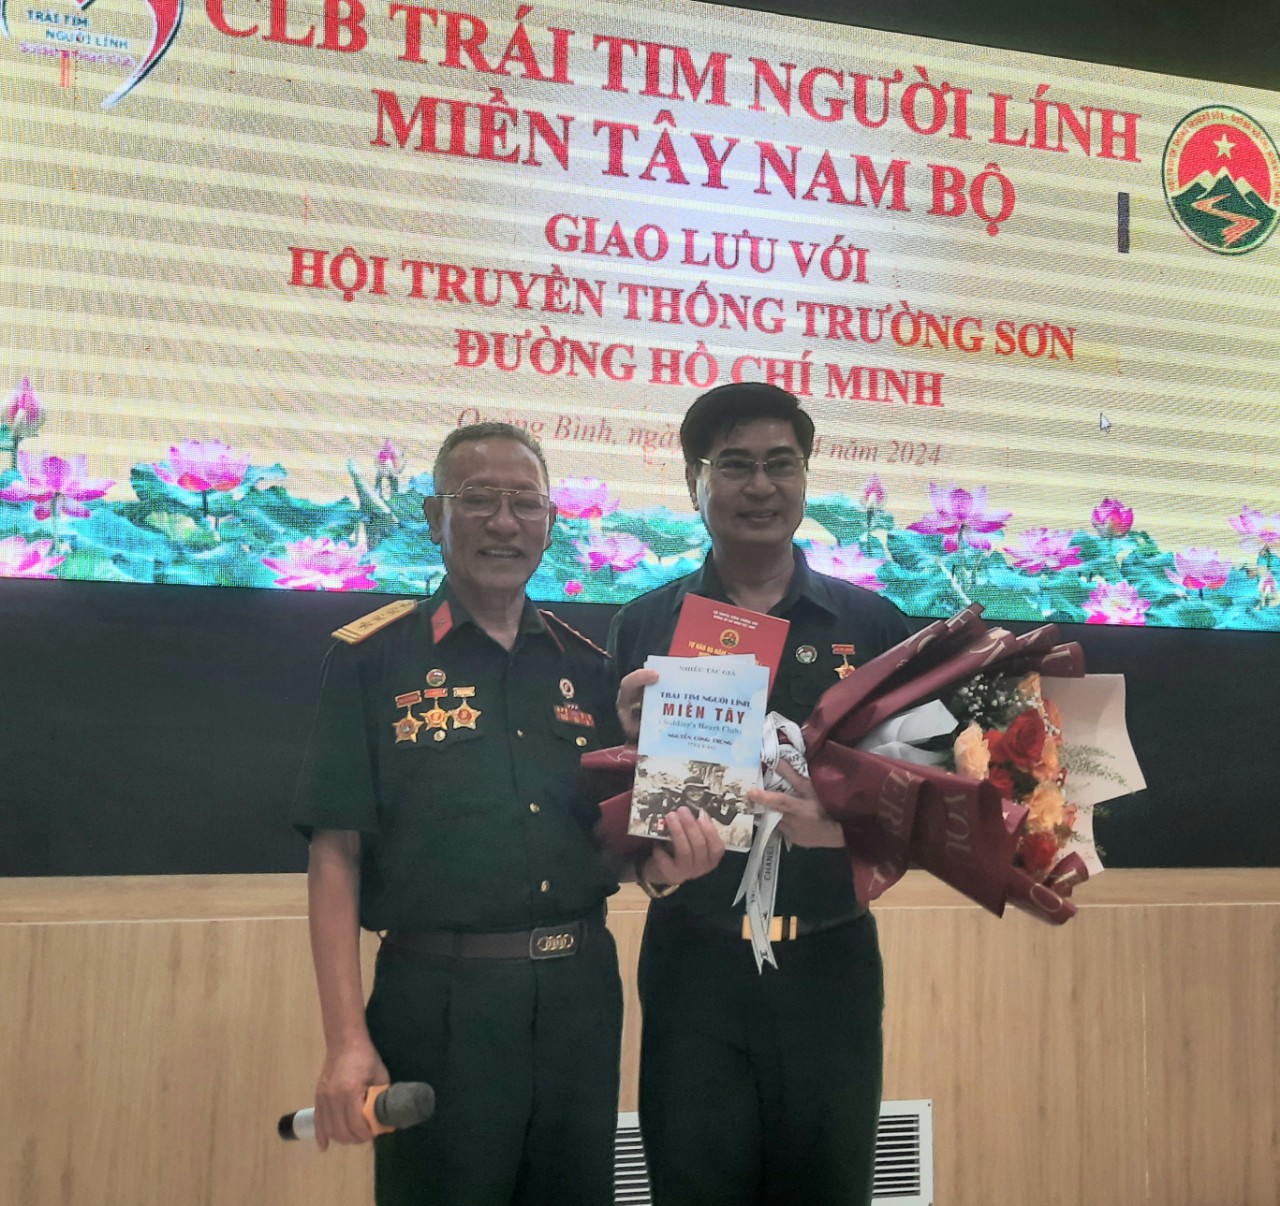 Chủ tịch CLB Trái tim người lính miền Tây tặng sách cho cựu chiến binh Nguyễn Quốc Trưởng , Chủ tịch Hội Truyền thống Trường Sơn - đường Hồ Chí Minh